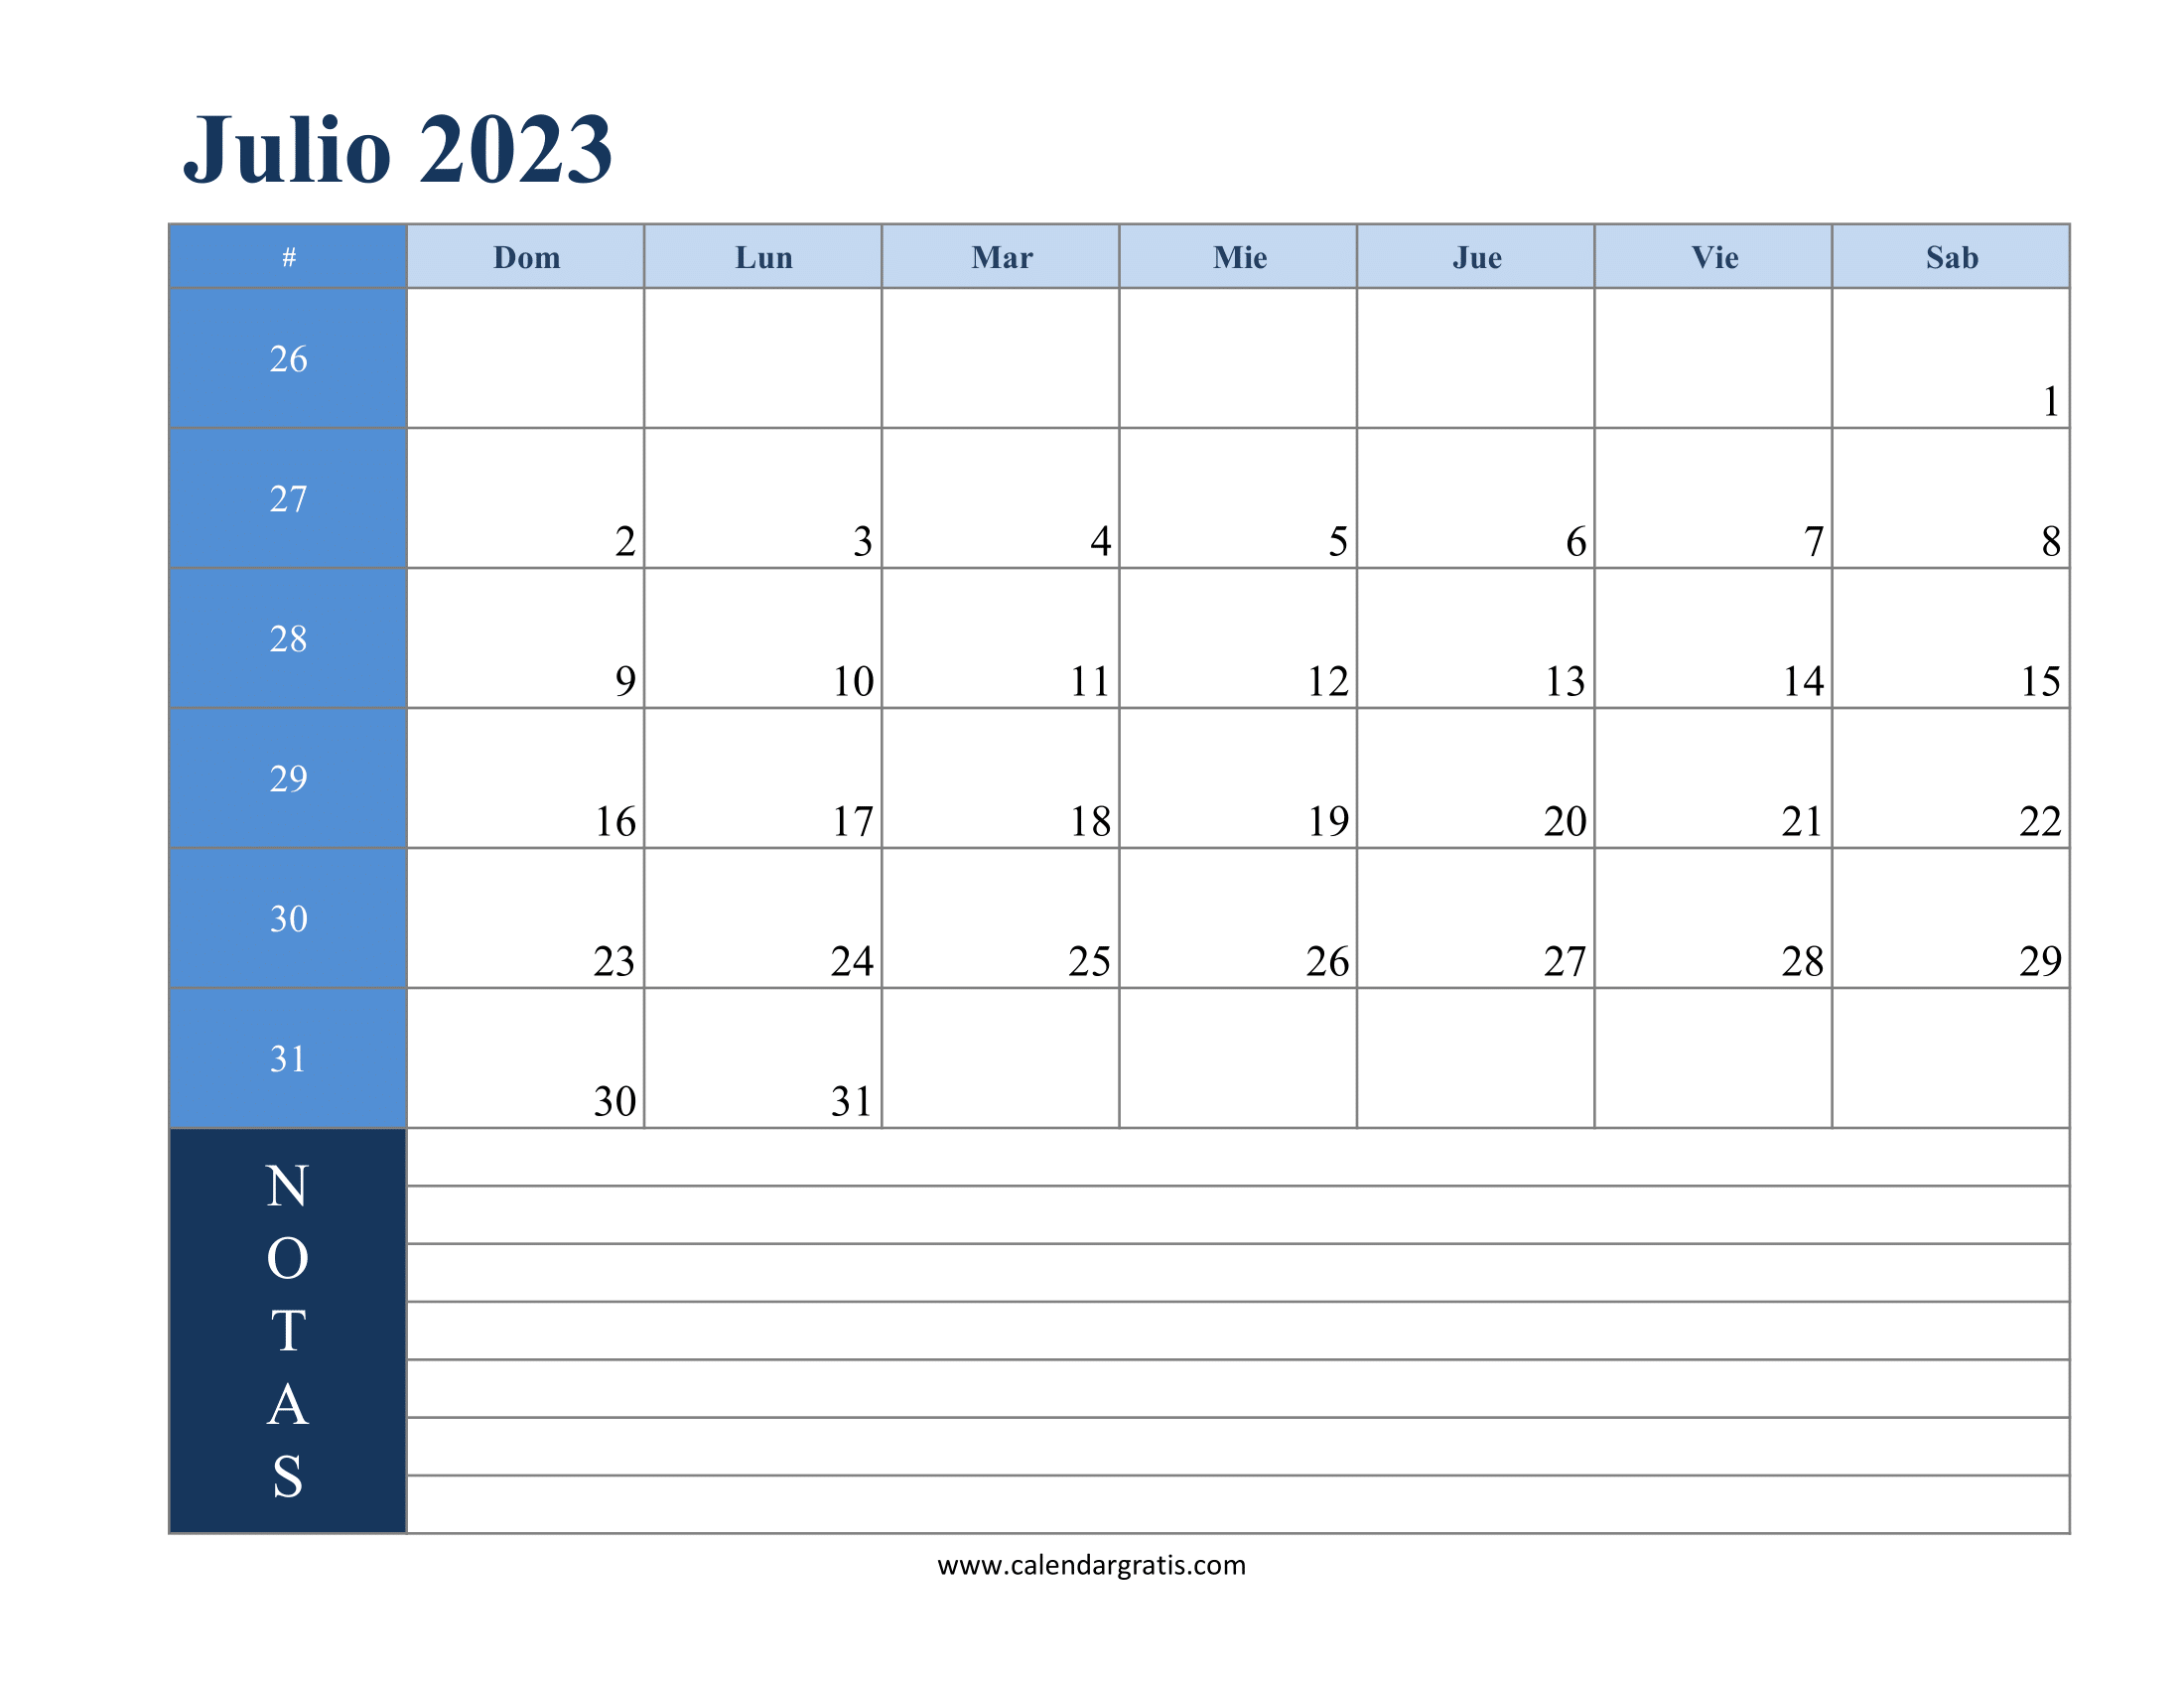 Calendario julio 2023 con apuntes para imprimir gratis: calendario mensual en español con espacio para tomar apuntes y planificar actividades.